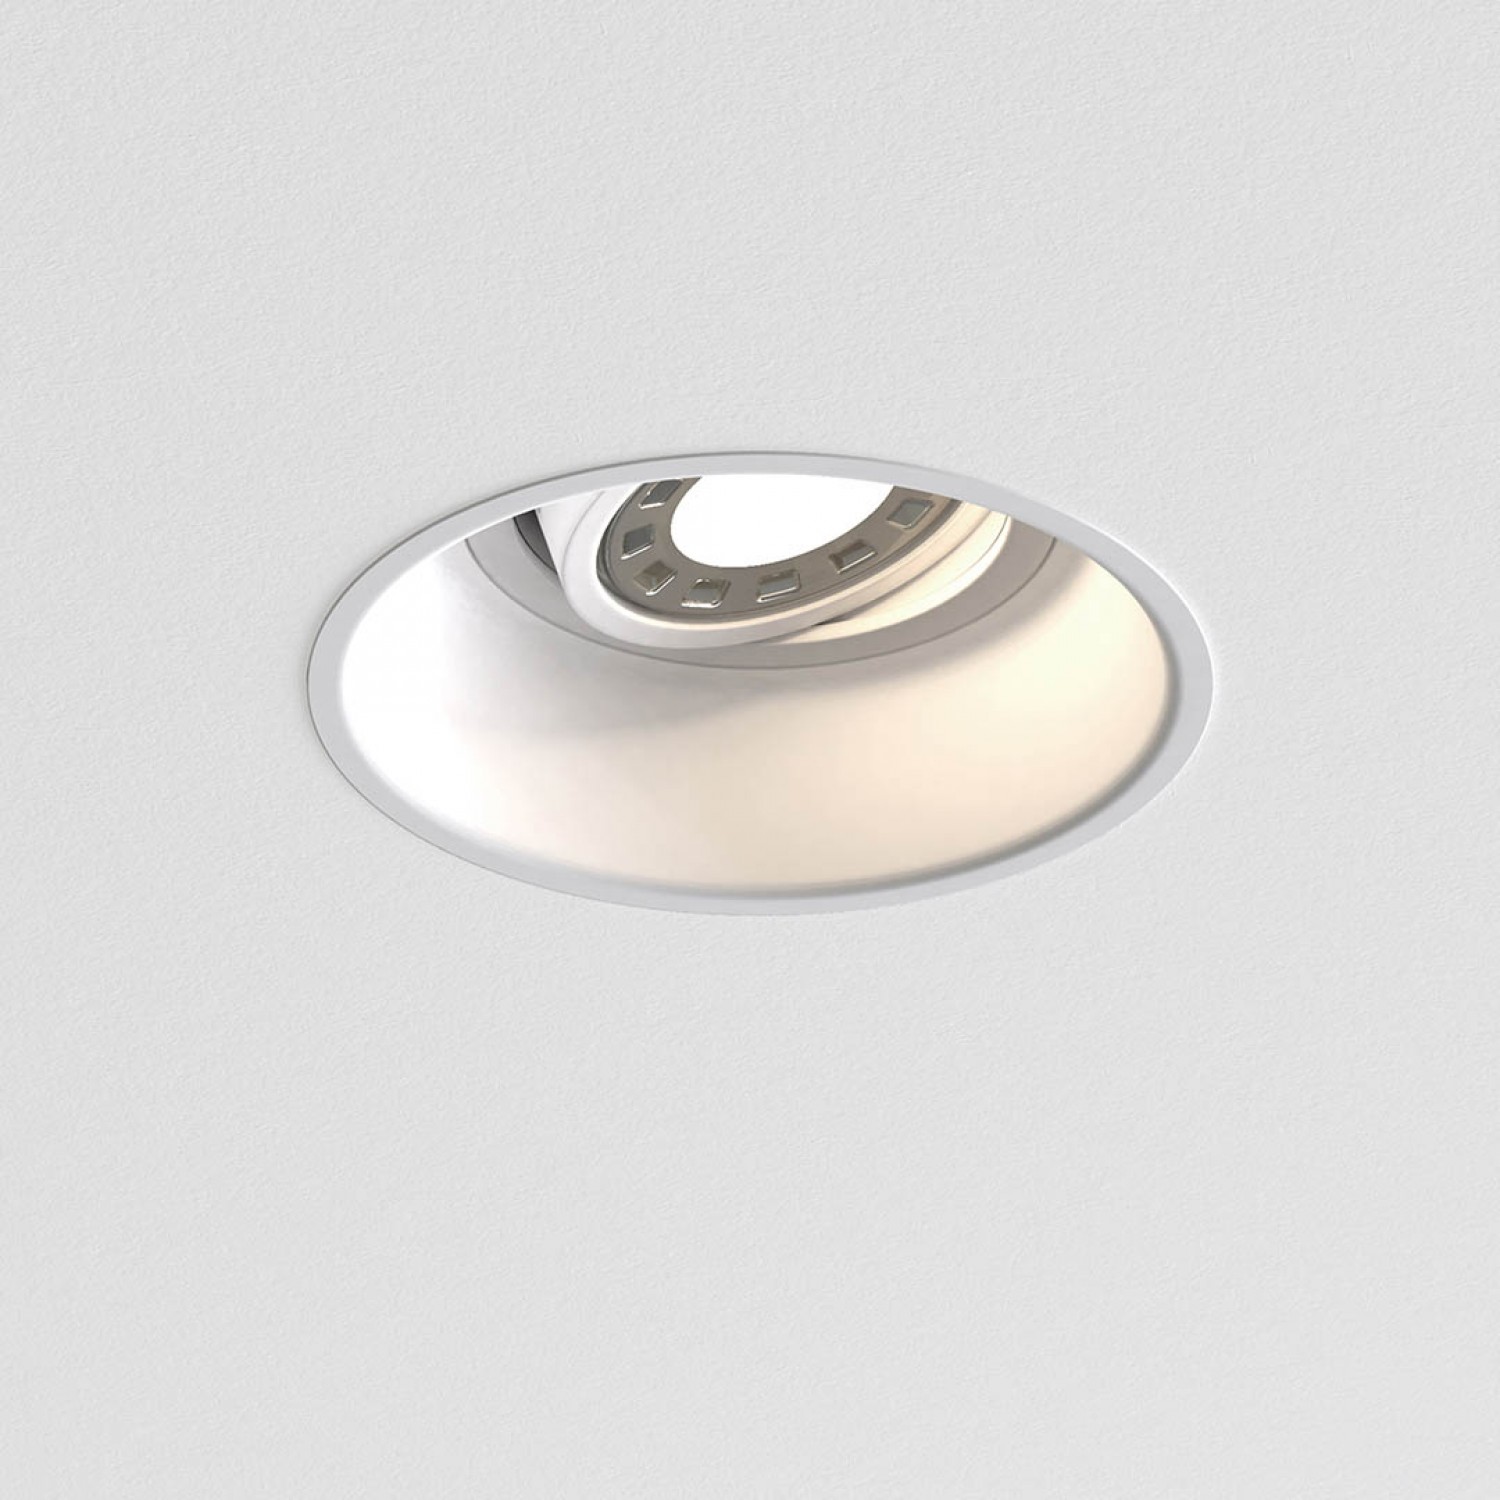 alt_image Врізний точковий світильник Astro Minima Round Adjustable Fire-Rated 1249008